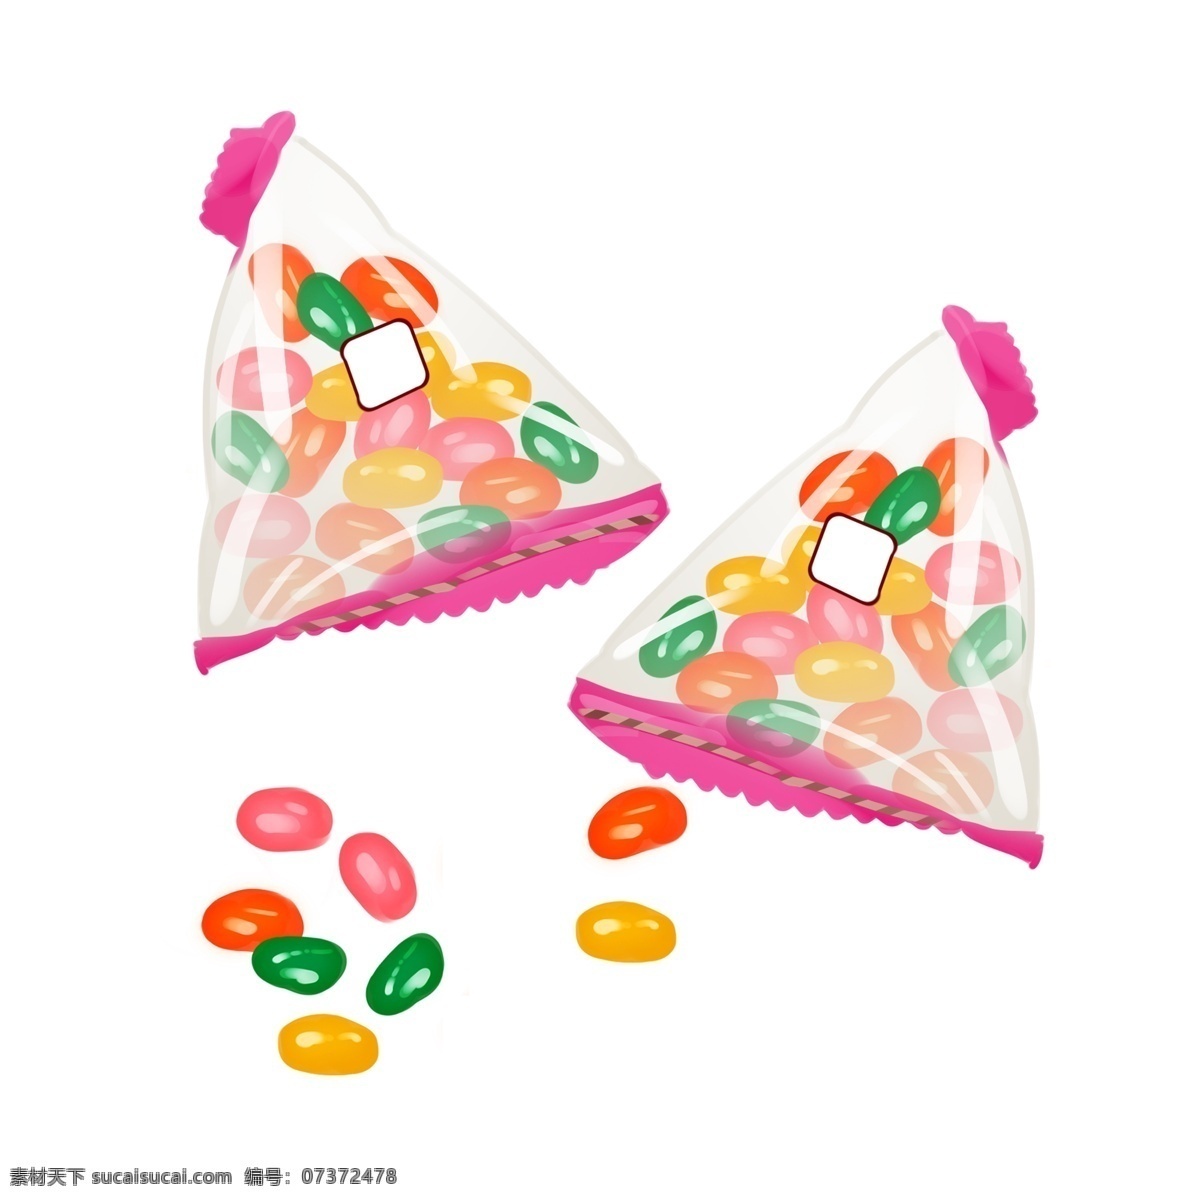 袋装 彩虹 糖 手绘 插画 袋装彩虹糖 美味的彩虹糖 甜品插画 手绘彩虹糖 彩色的糖果 甜食插画